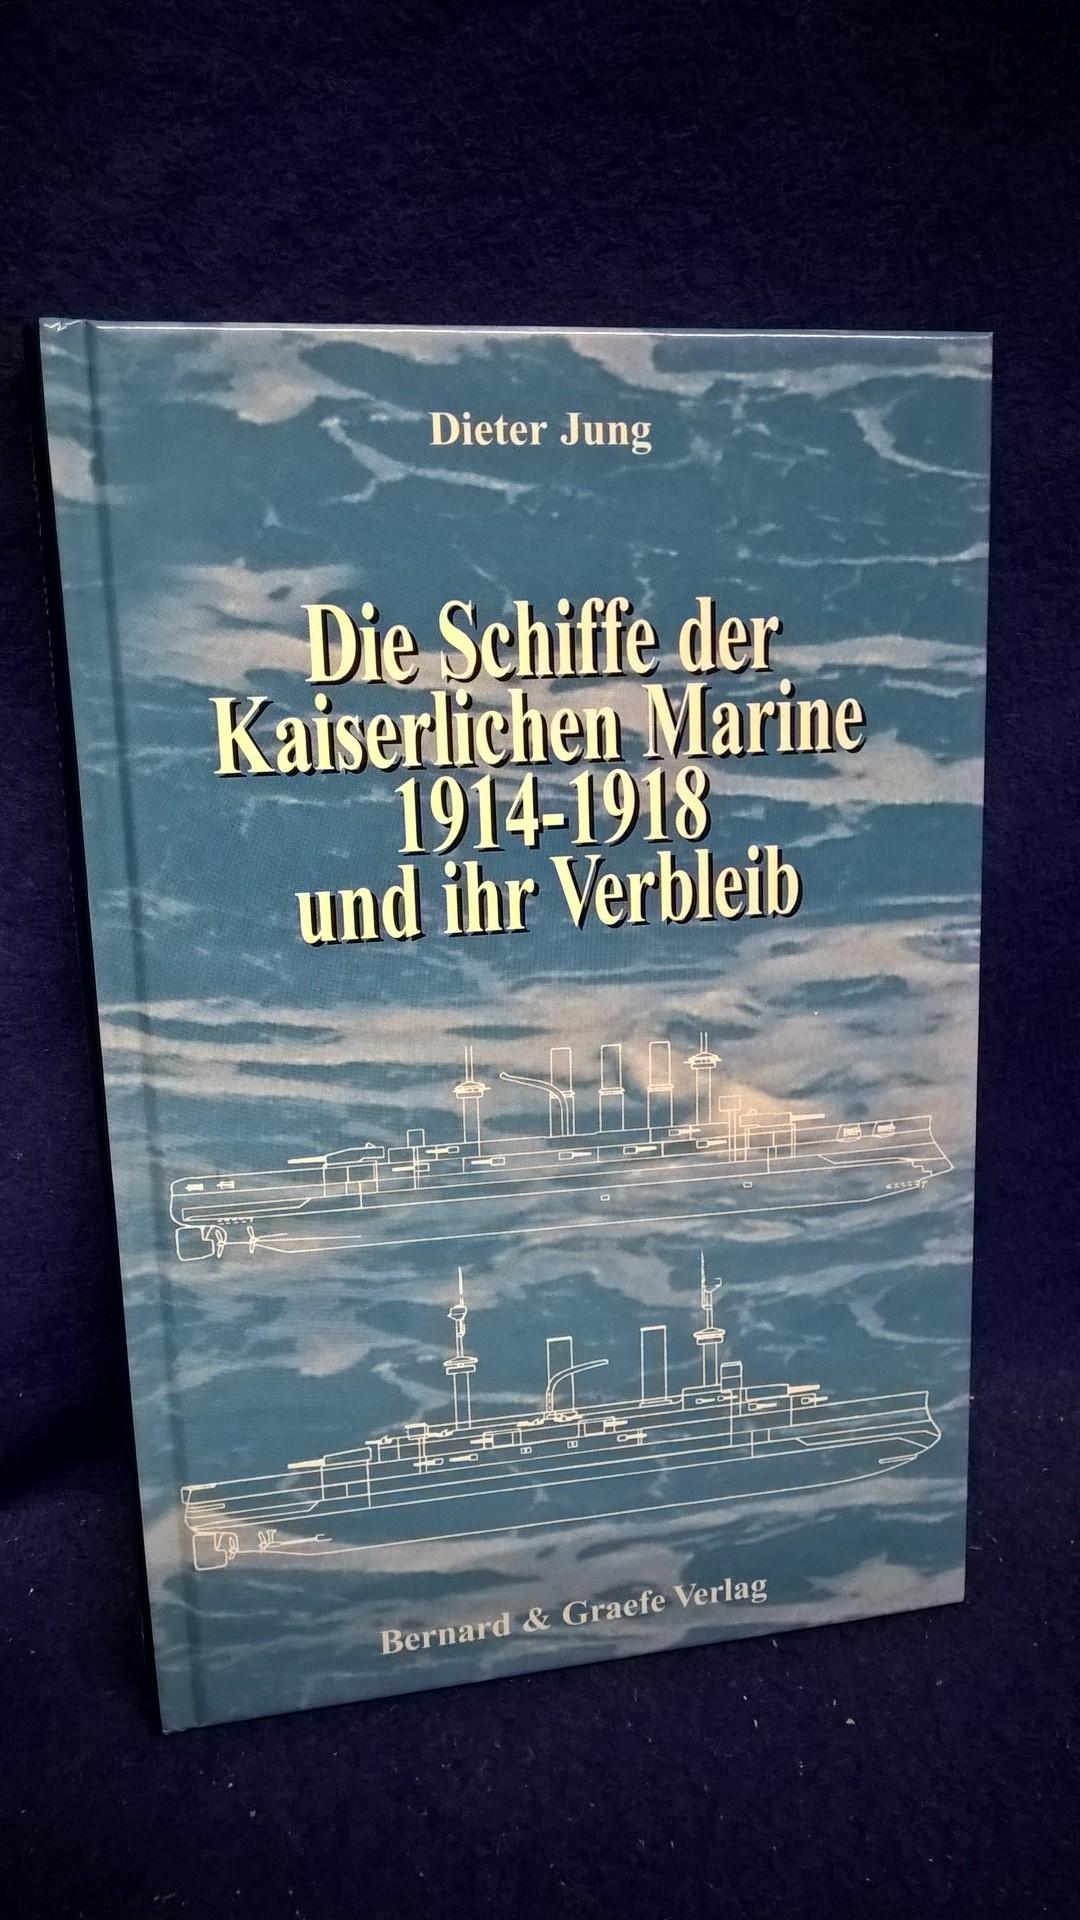 Die Schiffe der Kaiserlichen Marine 1914-1918 und ihr Verbleib.